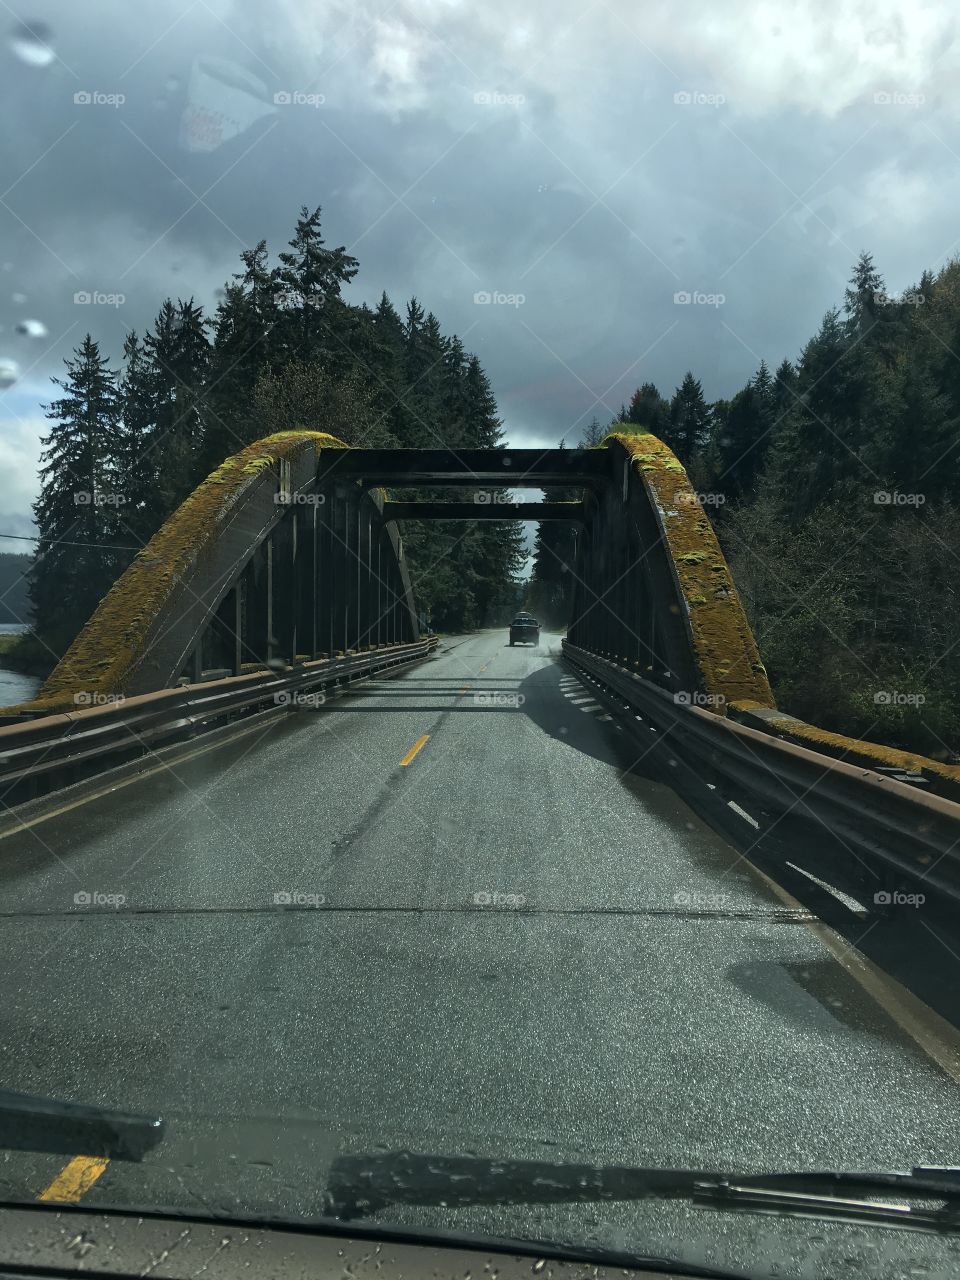 Oregon's Many Bridges